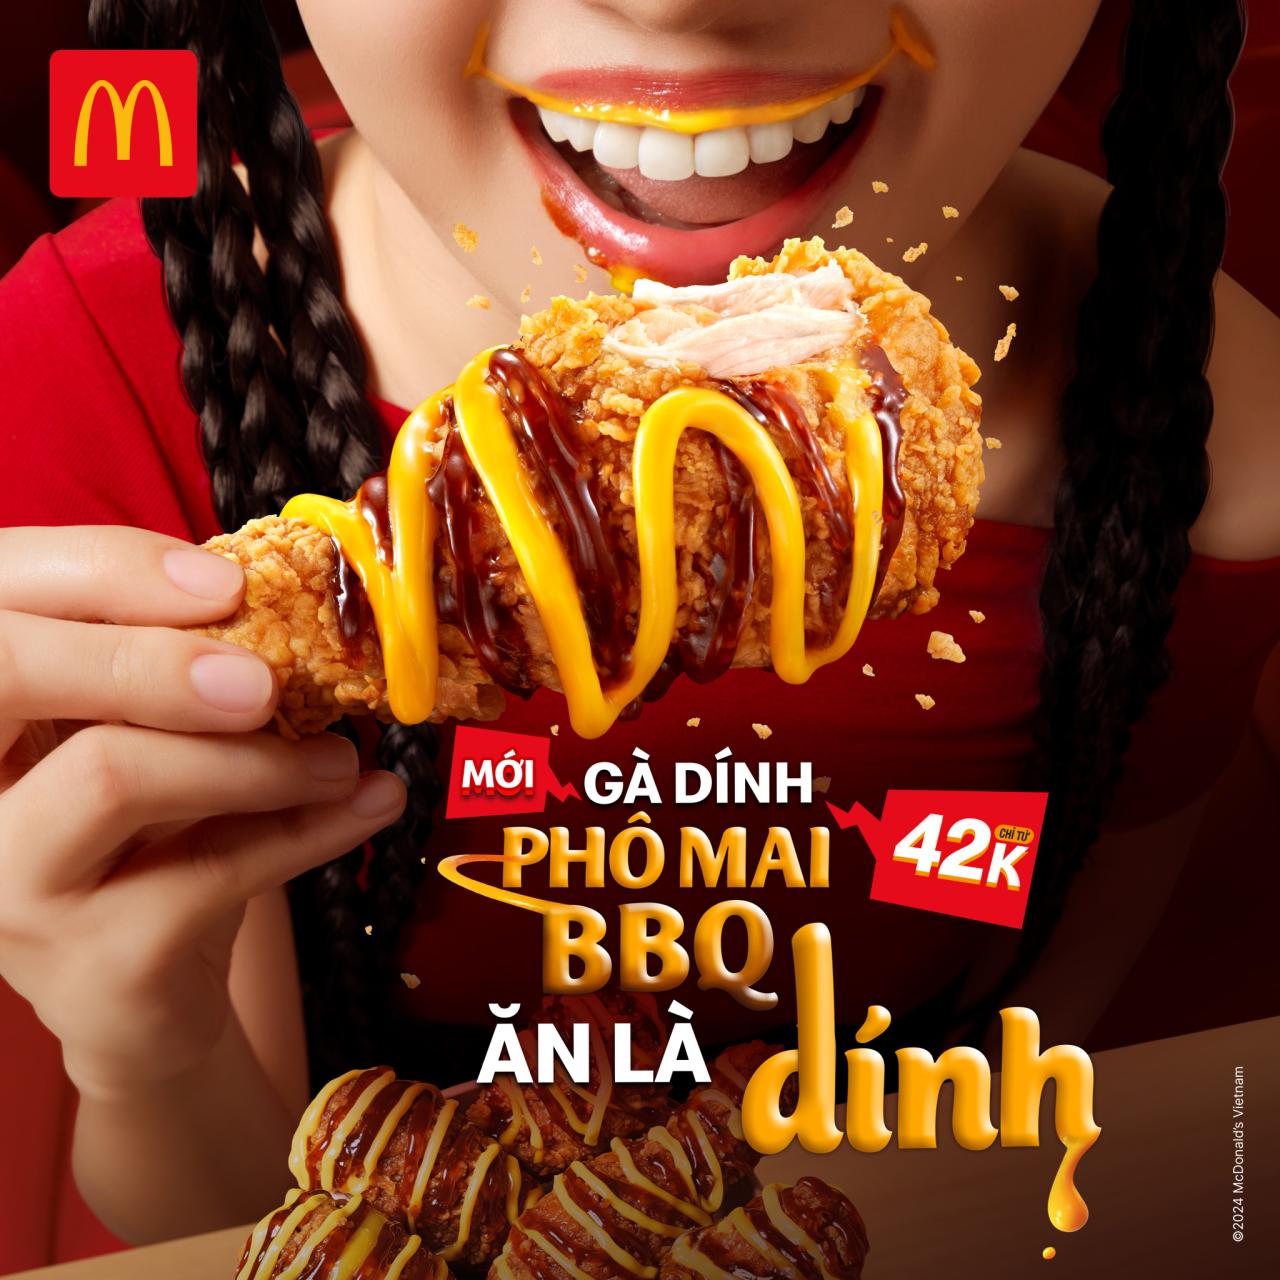 Tiên phong hướng tới nền kinh tế xanh, McDonald’s Việt Nam nhận giải Rồng Vàng lần thứ 6  - Ảnh 4.